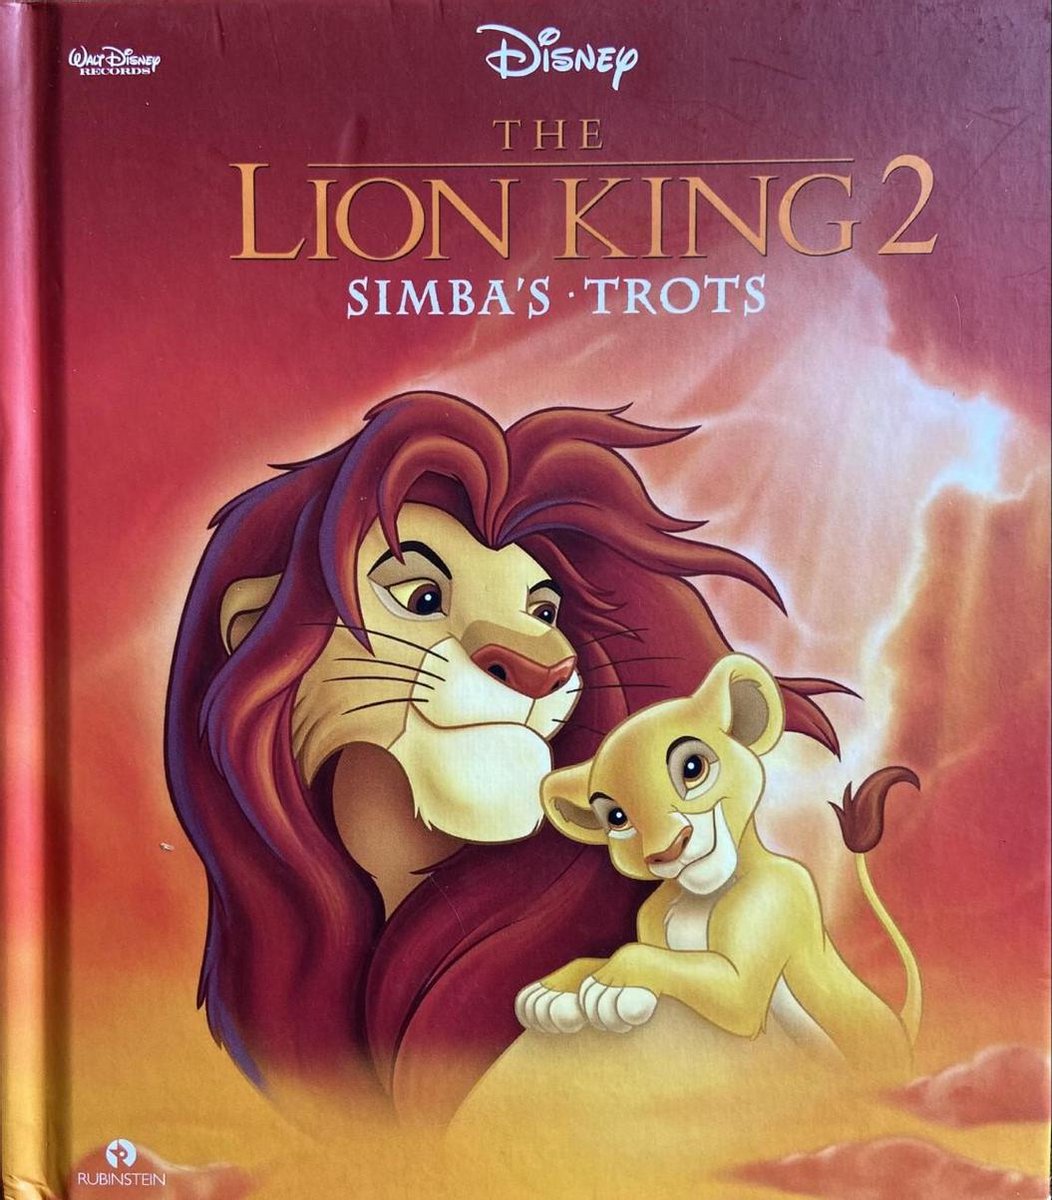 Paine Gillic Duplicaat licht The Lion king 2 Inclusief Luister cd | Tweedehands | Boekenbalie